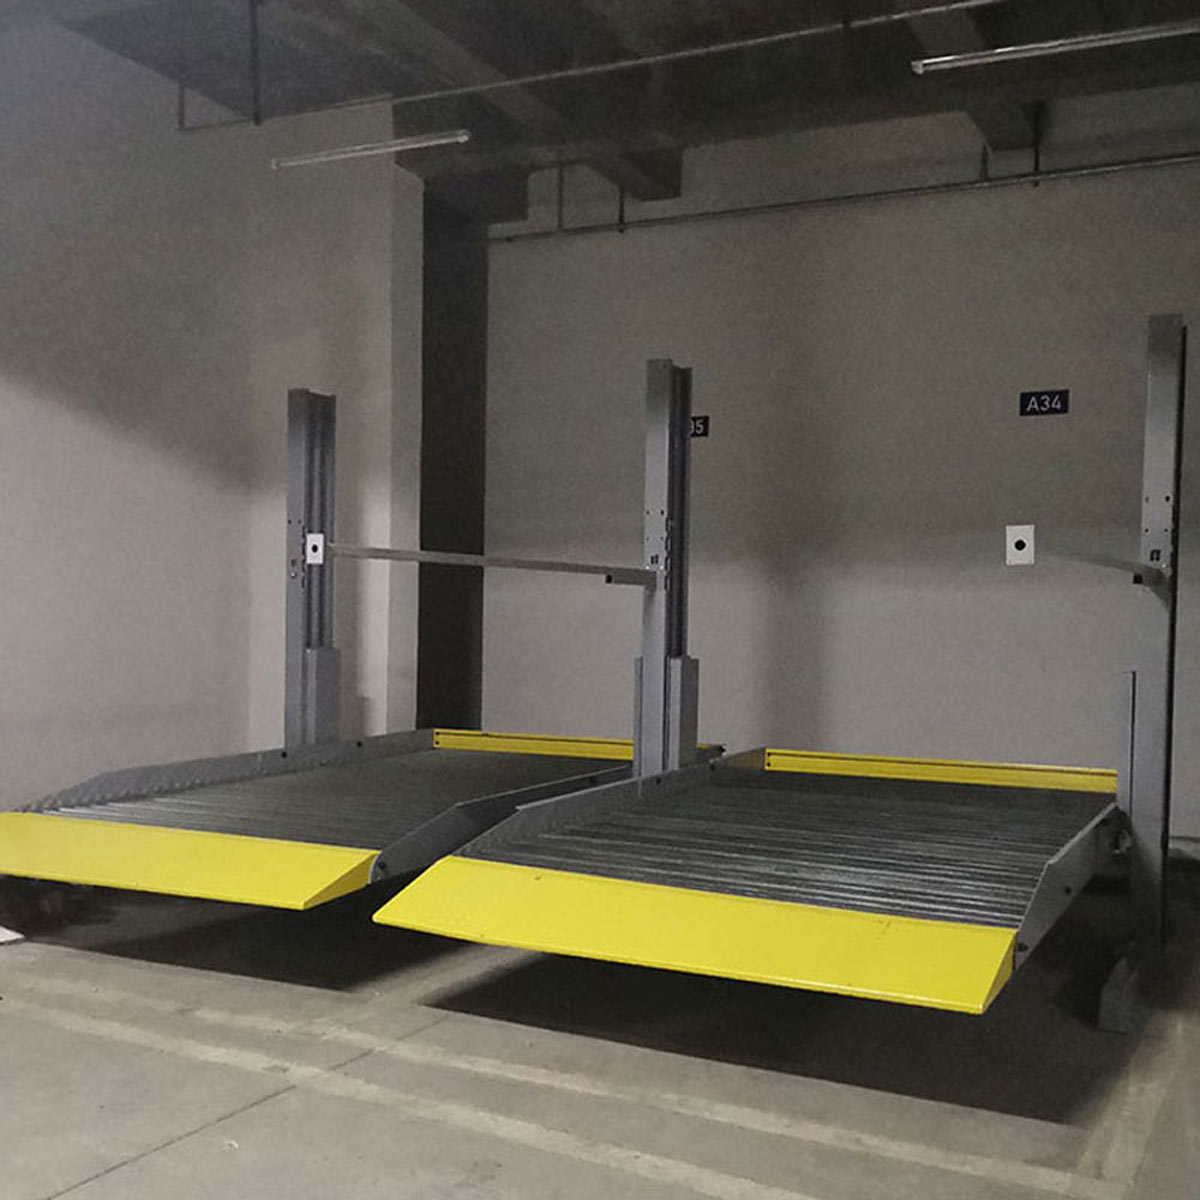 沙灣自動化停車庫的設計思路